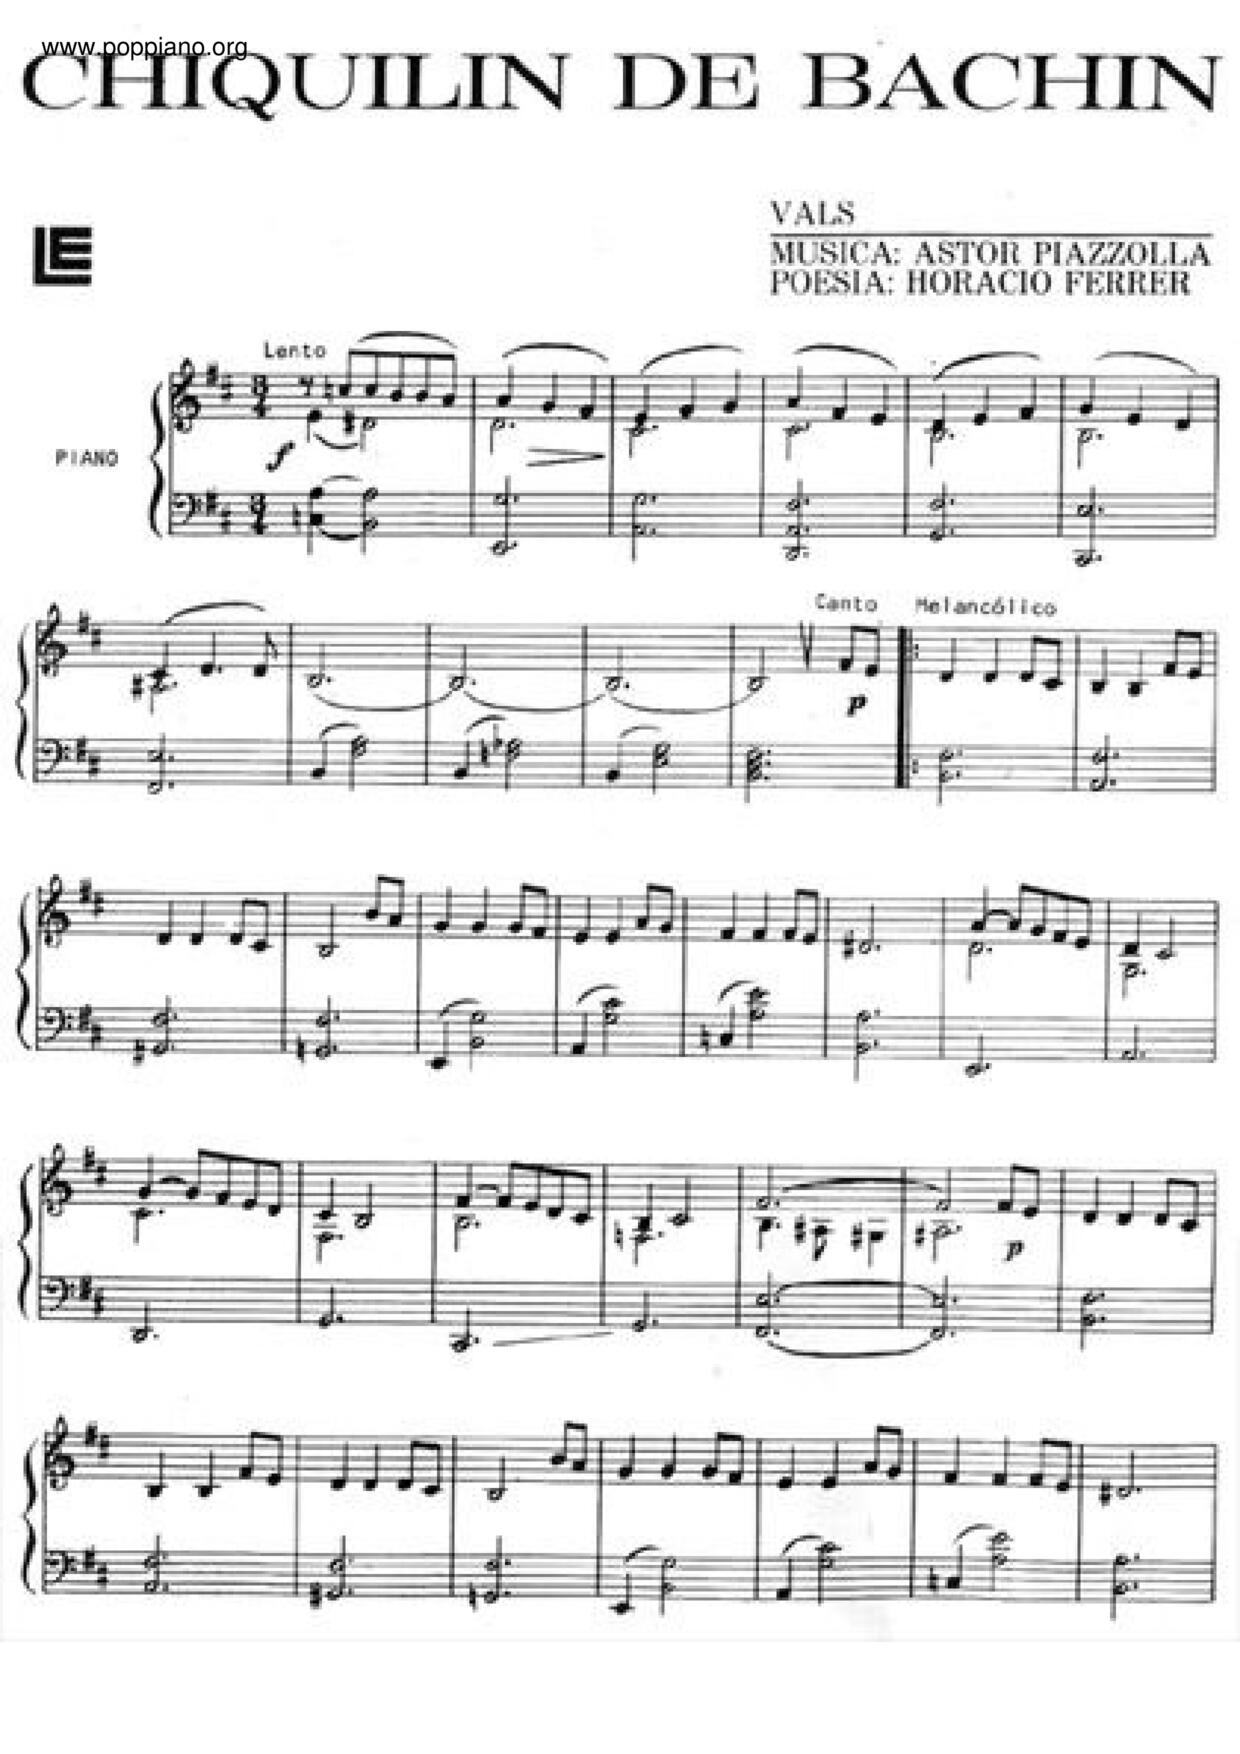 Chiquilin De Bachin Score